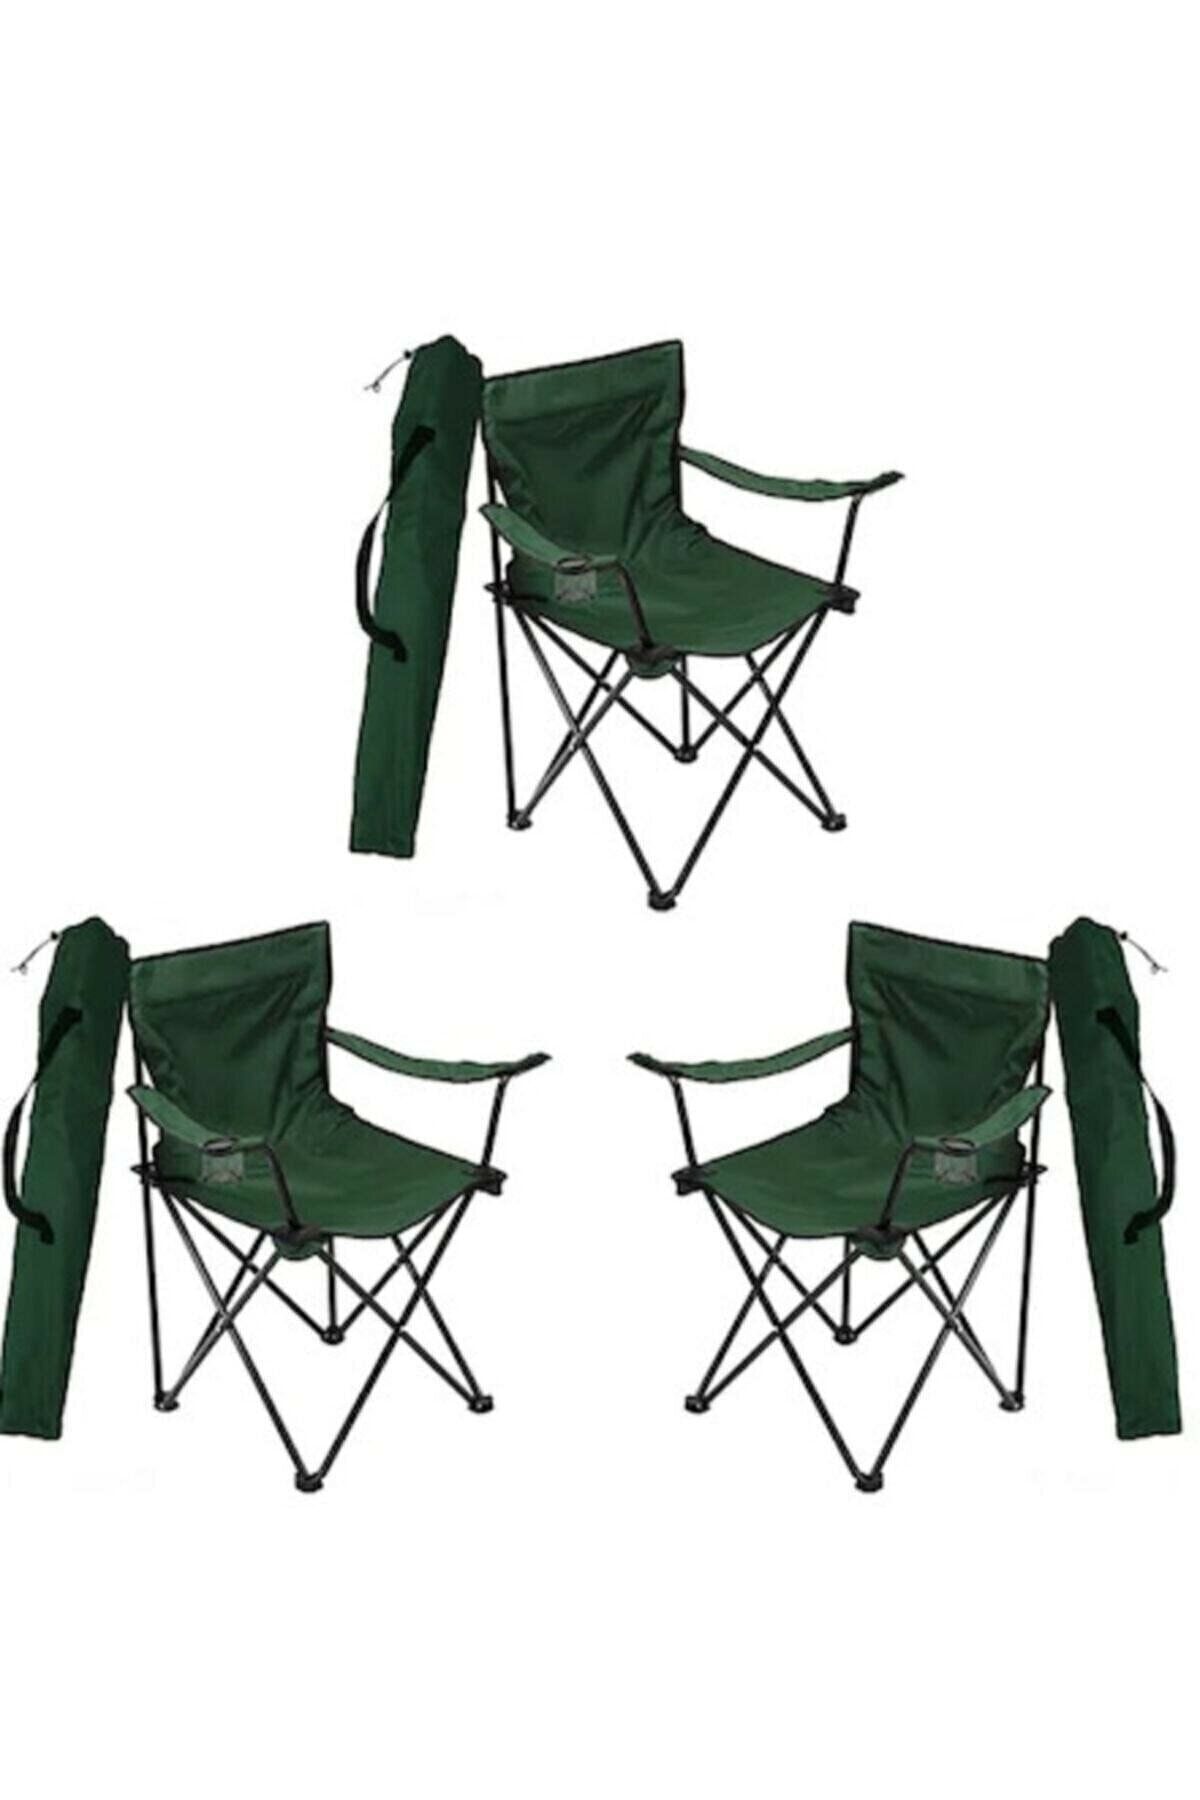 Mocca Style Piknik, Plaj Ve Kamp Sandalyesi Katlanır Sandalye Bahçe Plaj Balkon Sandalyesi 3 Adet